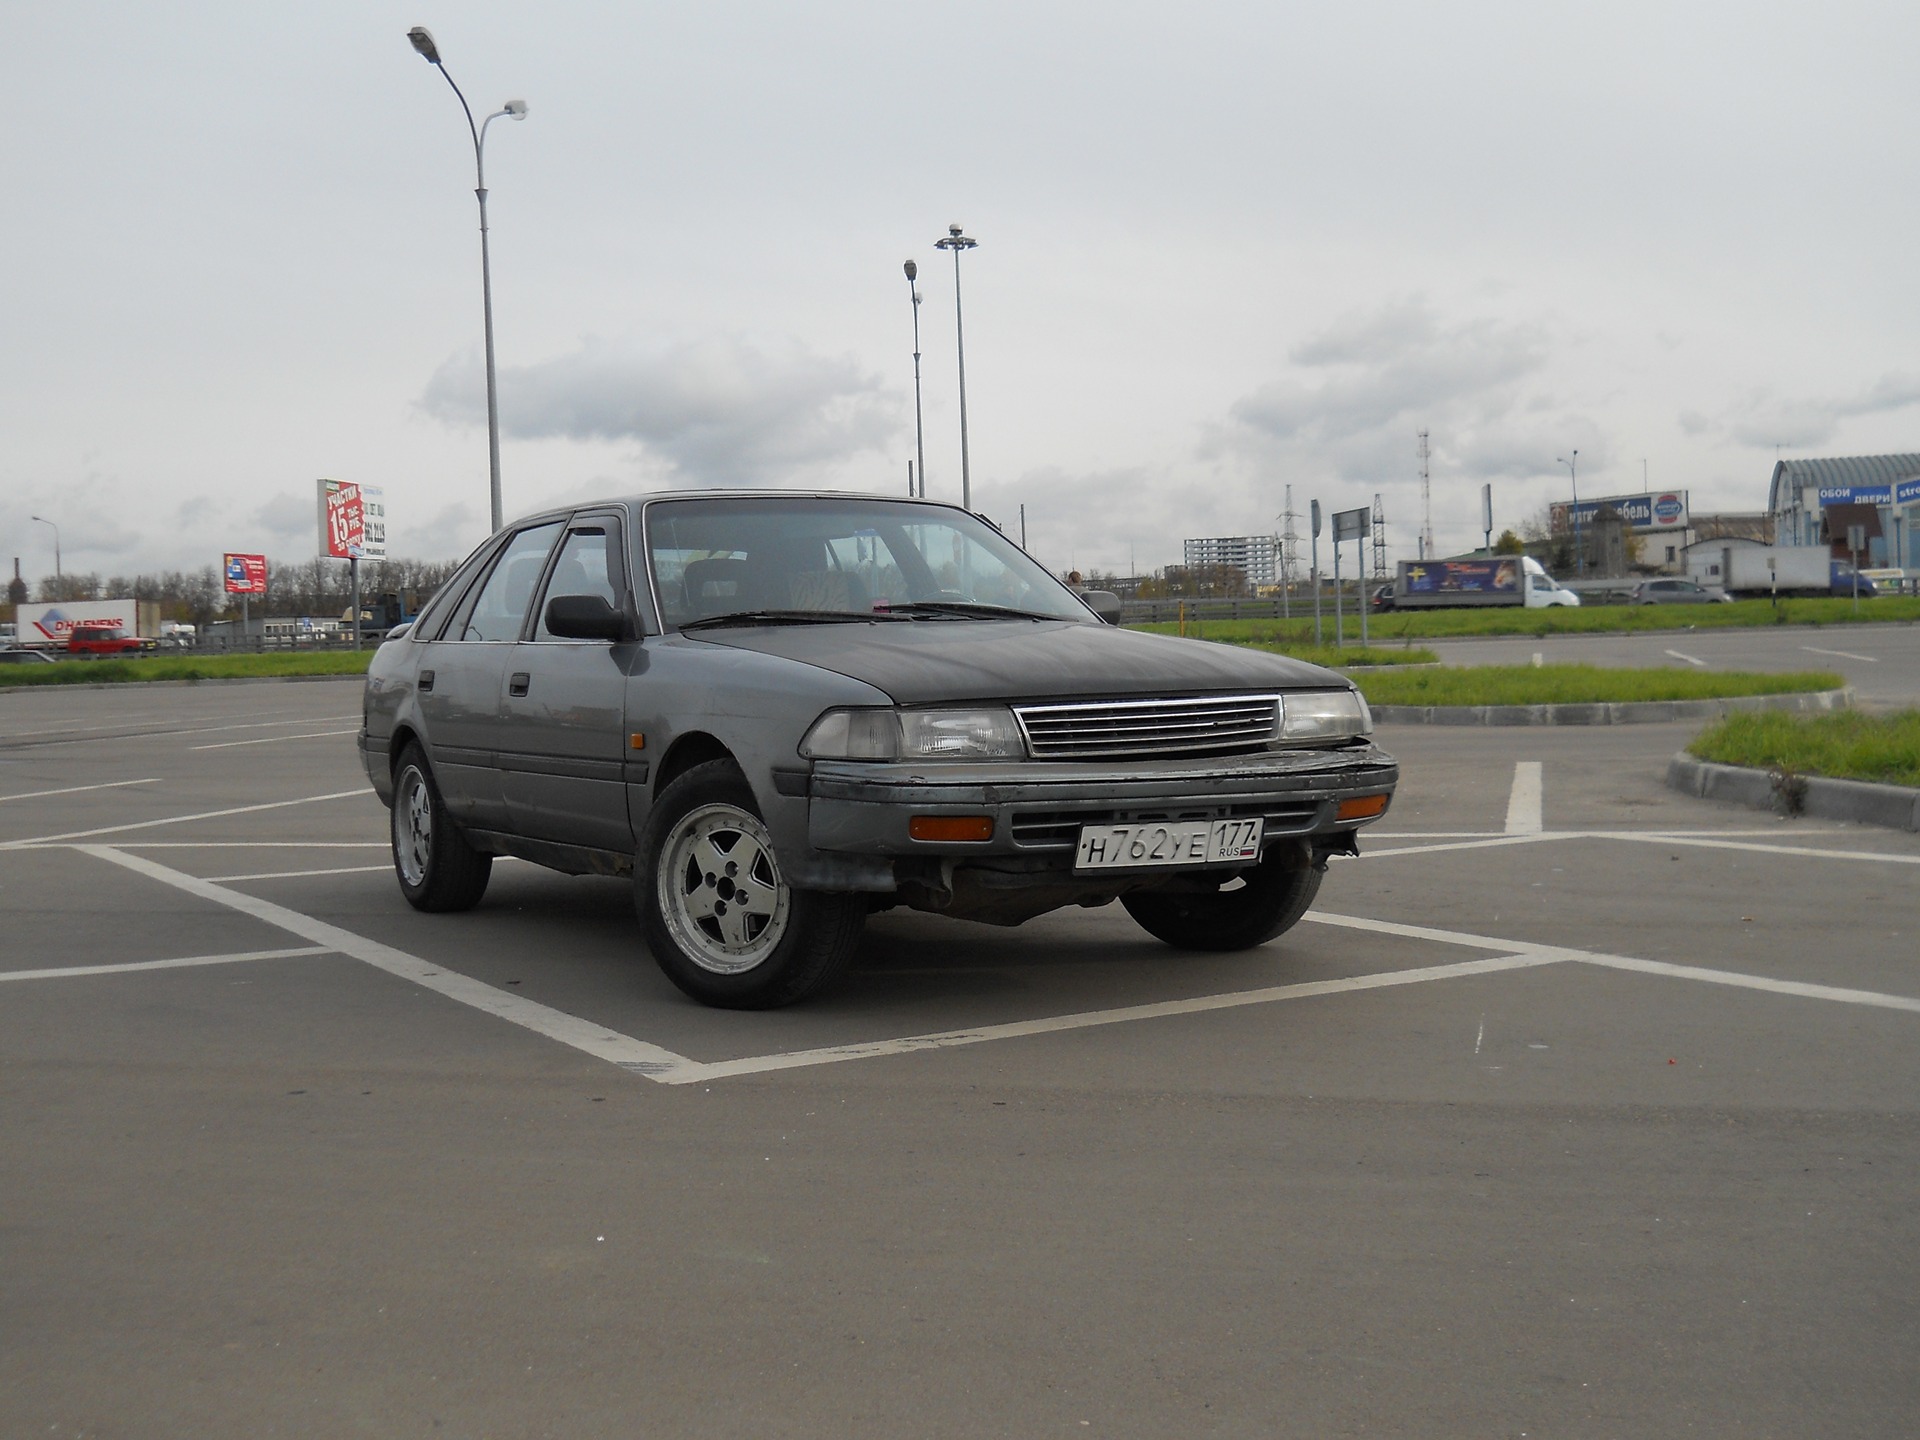   15 Toyota Carina II 16 1988 